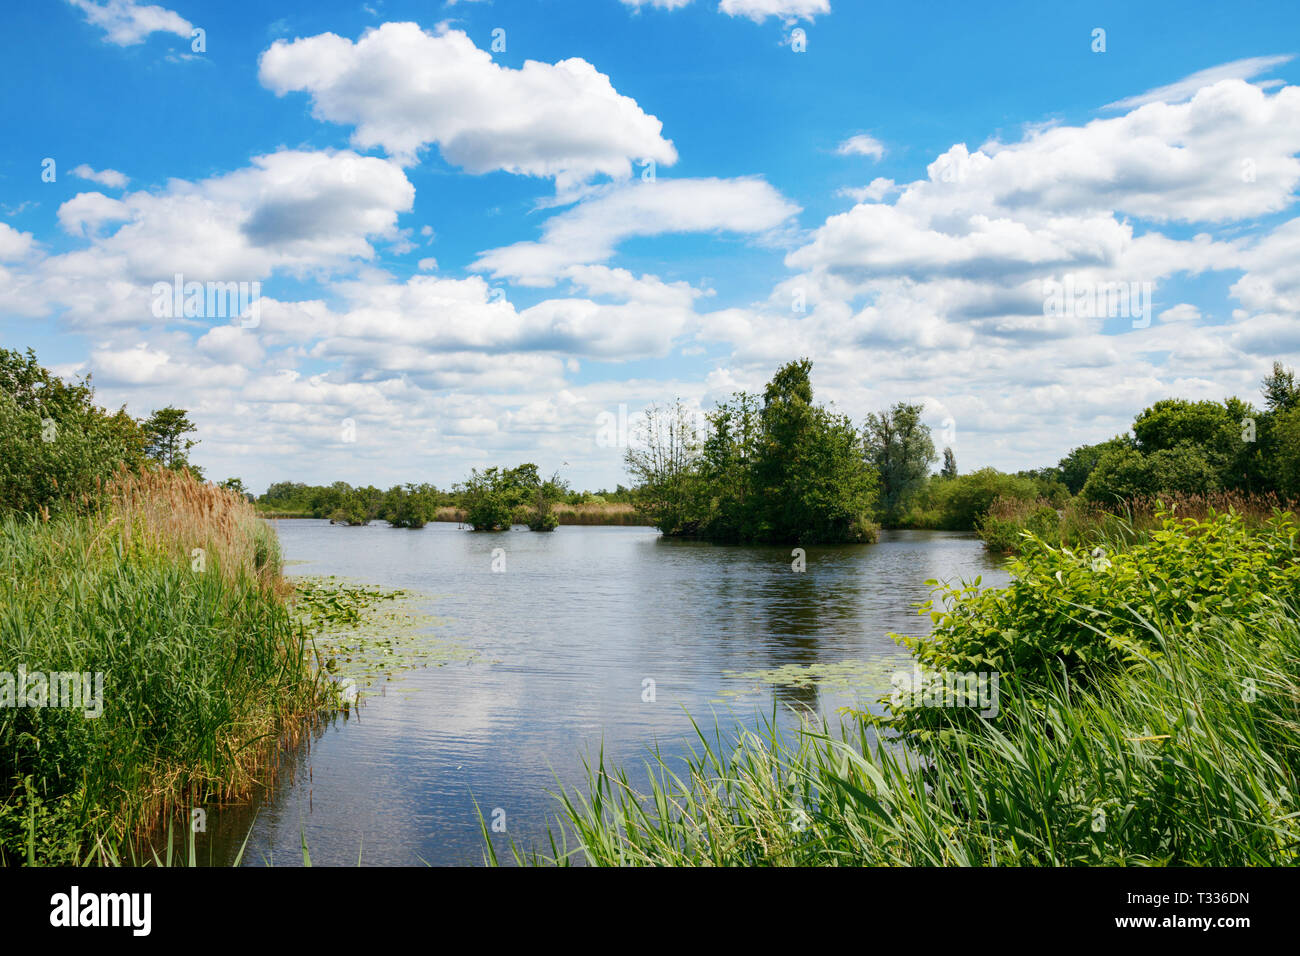 In tipico stile olandese piatto paesaggio delle zone umide zone umide in una giornata di sole onder un cielo blu con nuvole. Maarsseveen, Paesi Bassi. Foto Stock